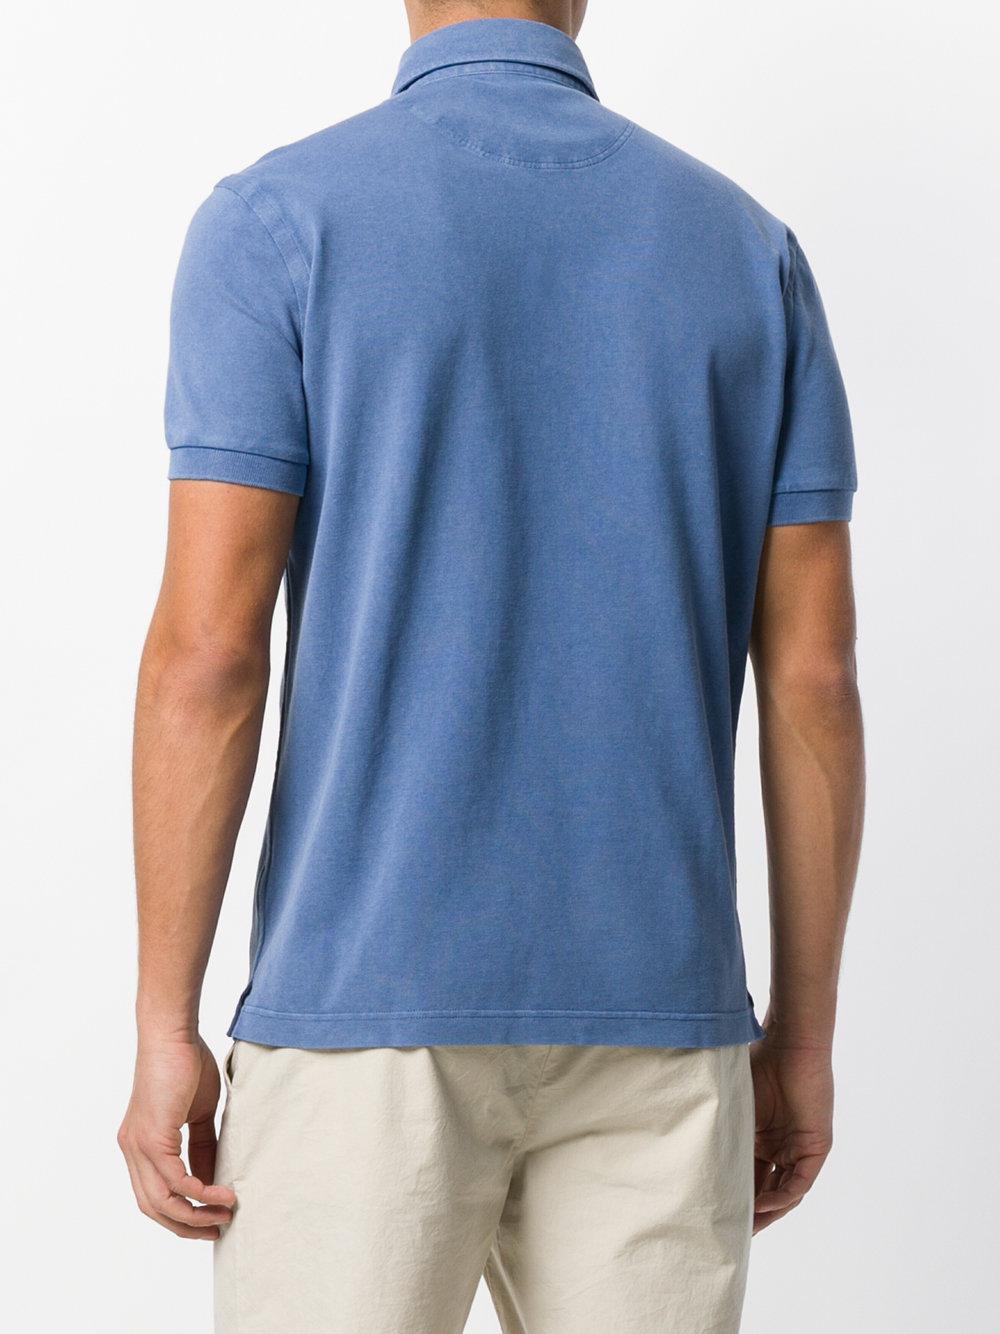 Dell'Oglio Cotton Classic Polo Shirt in Blue for Men - Lyst